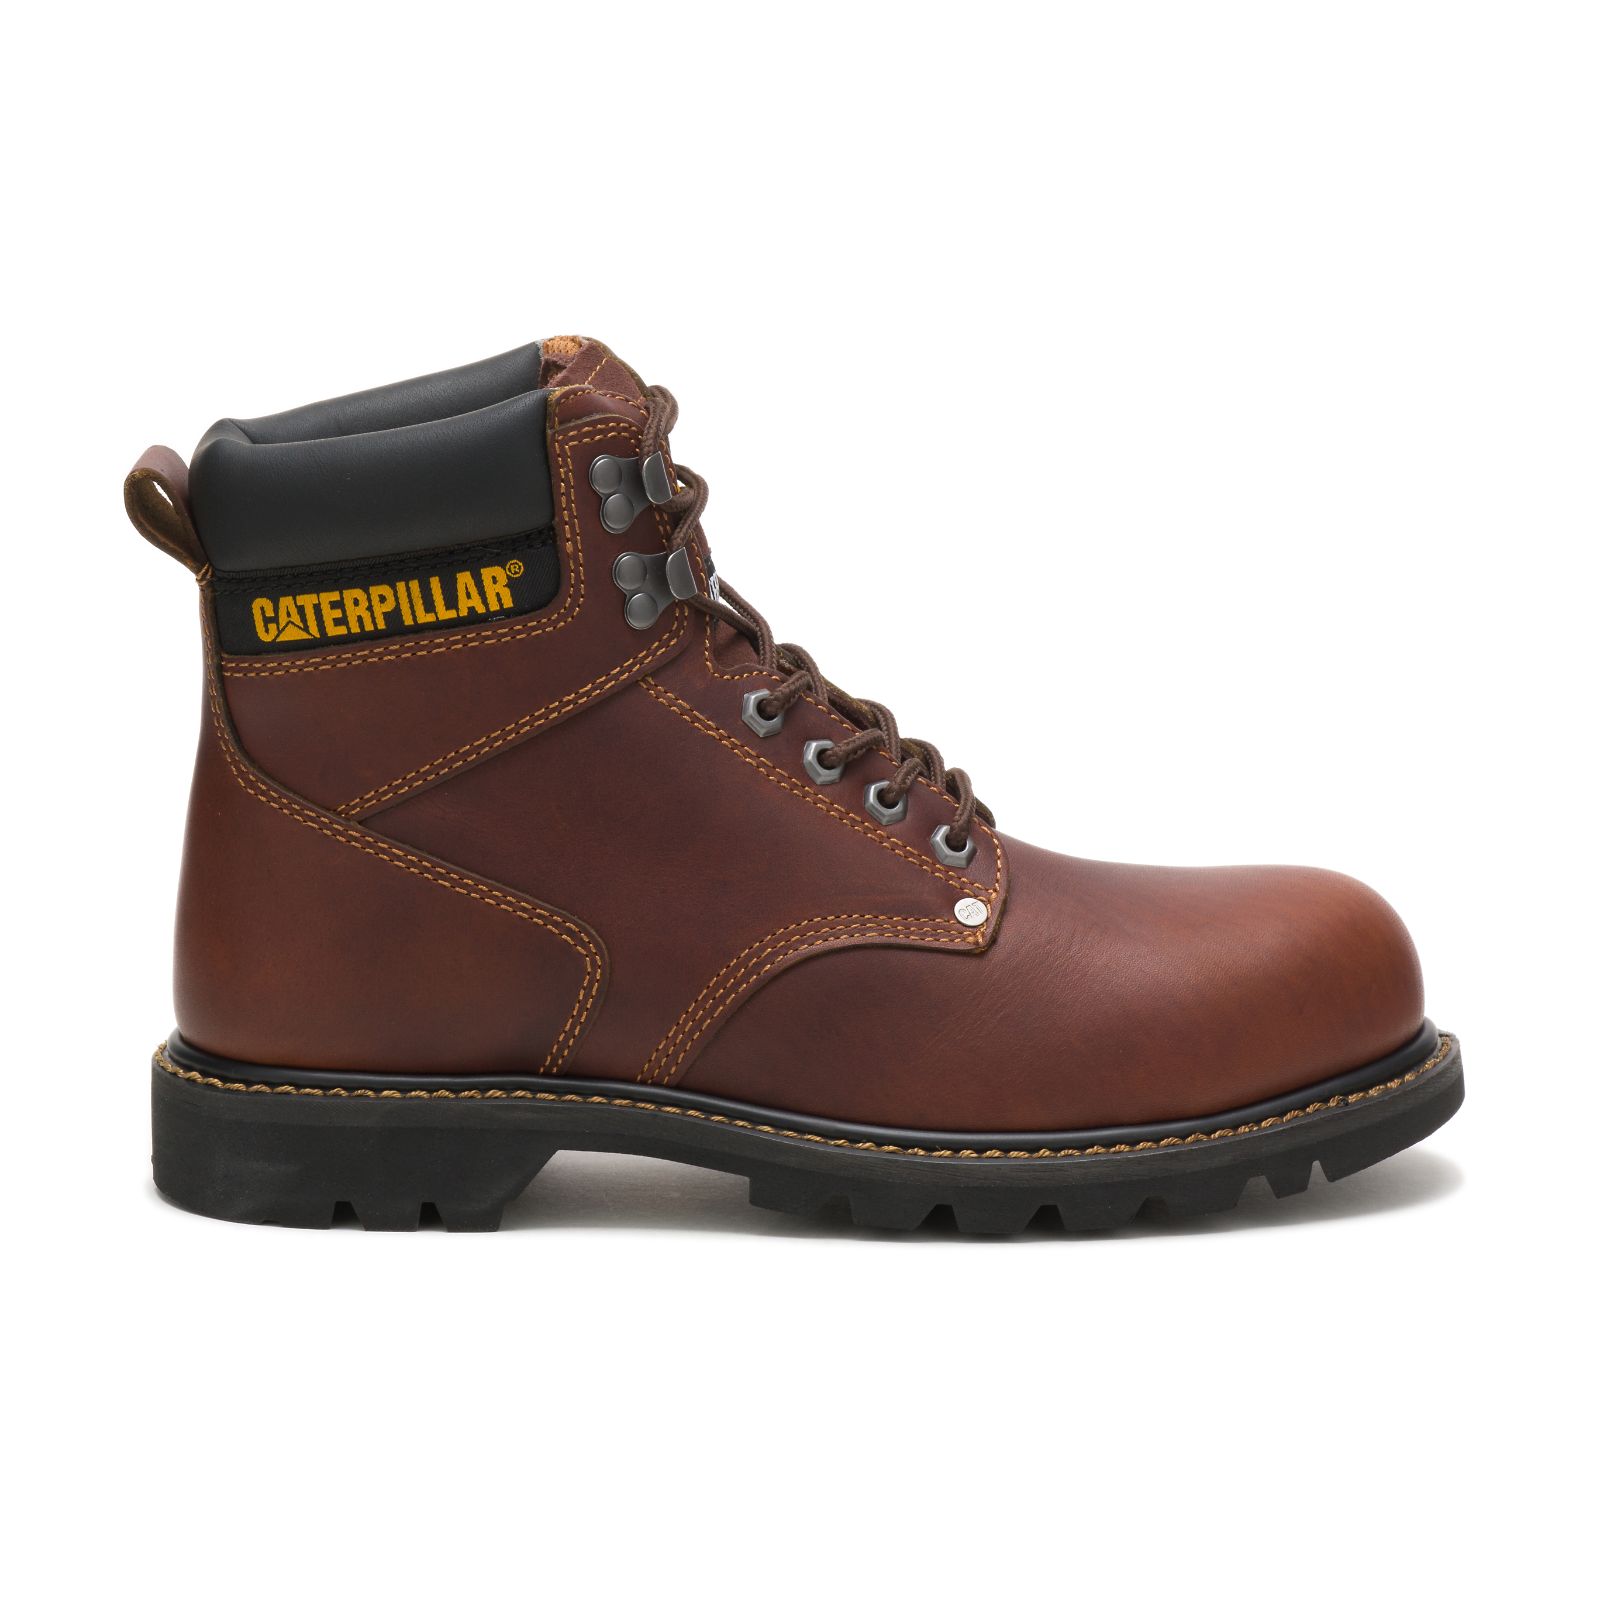 Caterpillar Work Boots Dubai - Caterpillar Second Shift Steel Toe Mens - Brown LQFHMR571